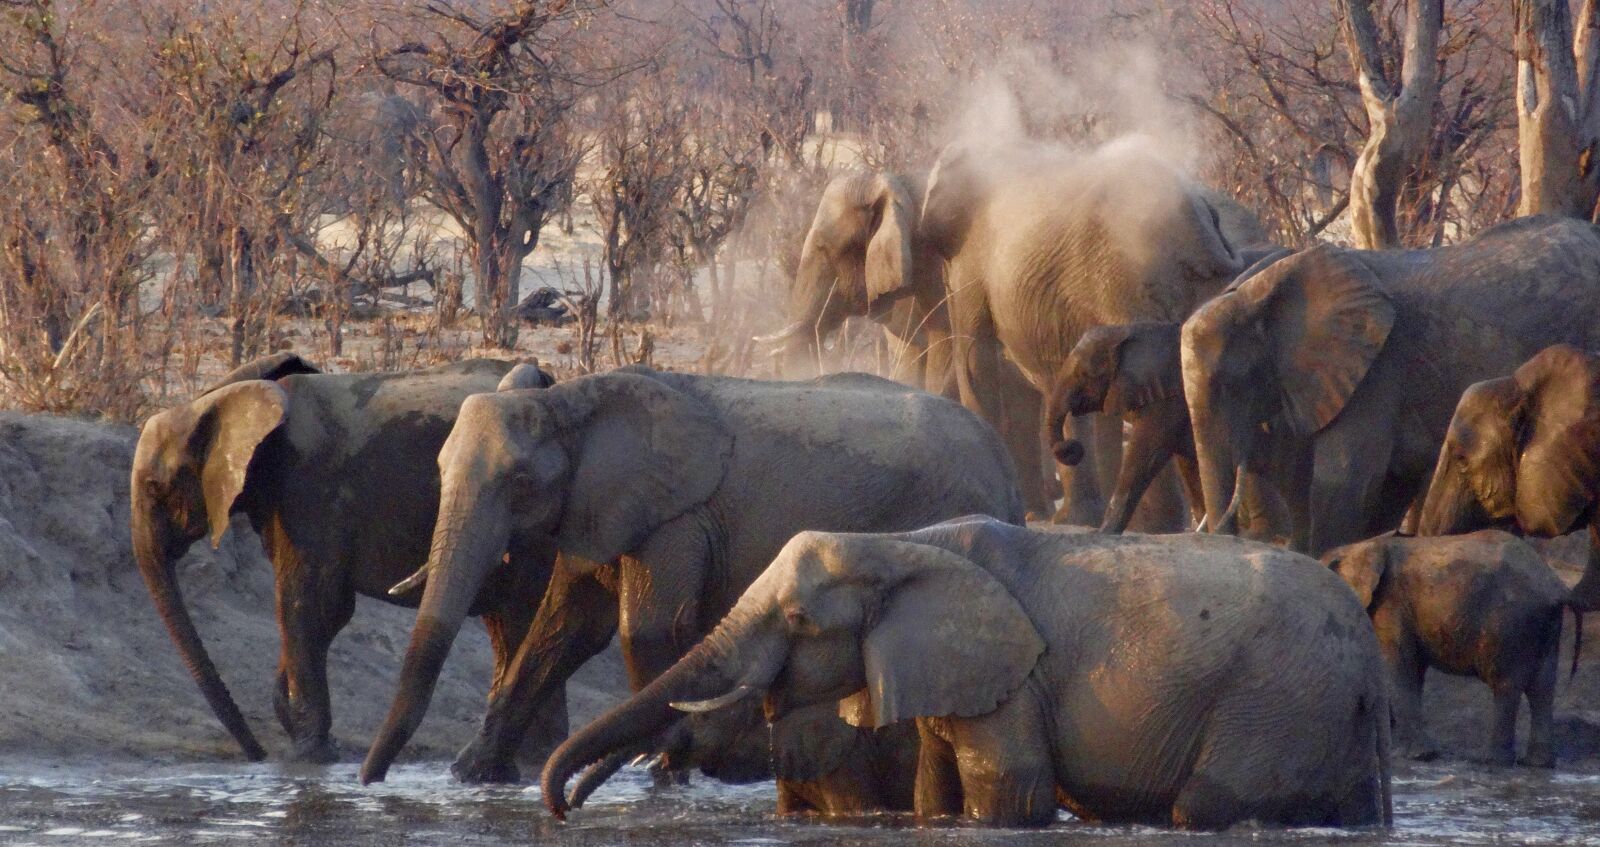 Sony Cyber-shot DSC-HX20V sample photo. Africa, elephants, wildlife photography